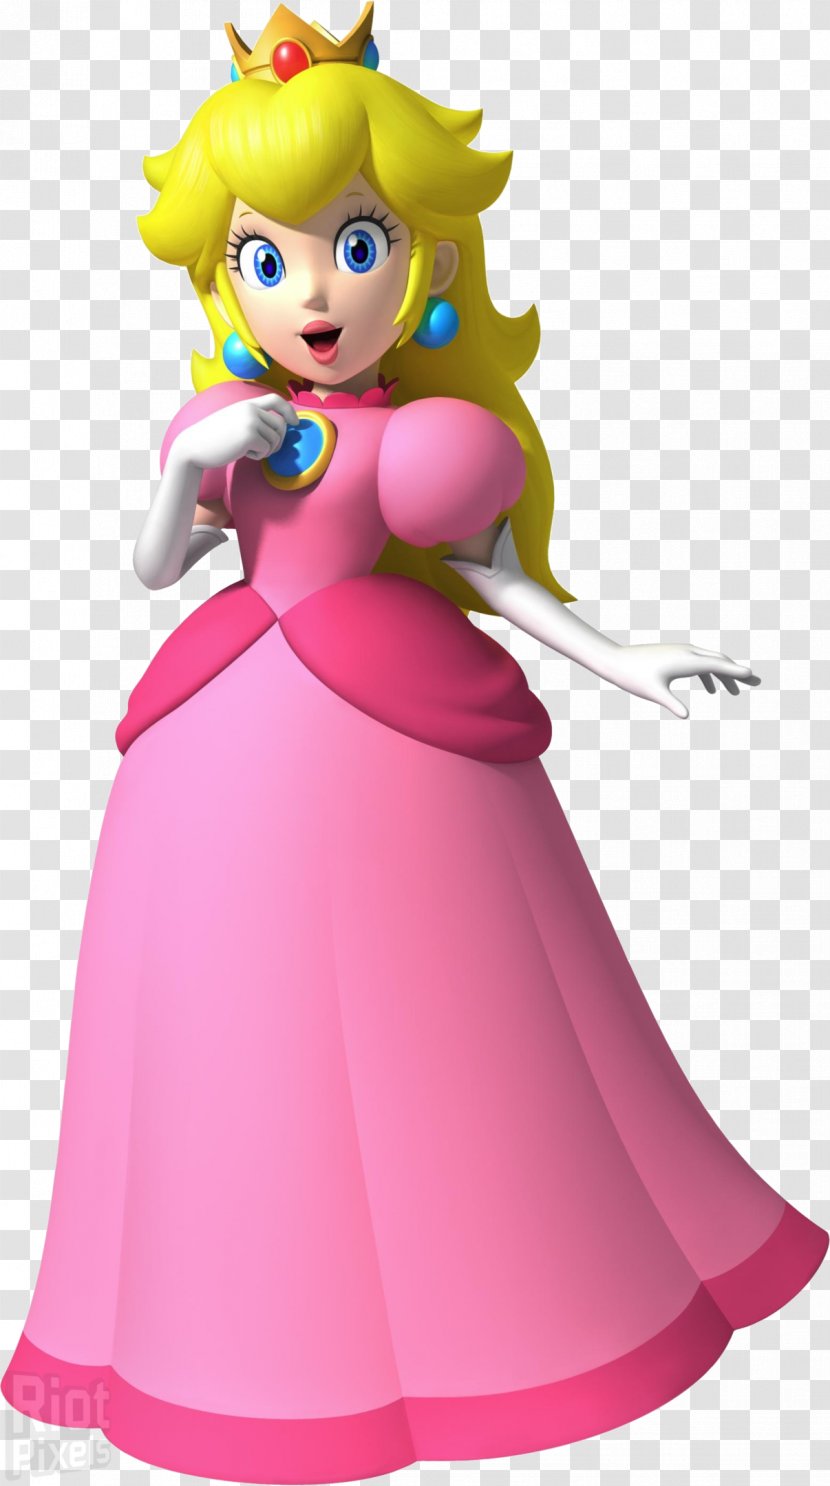 Super Mario Bros. Princess Peach Bowser Video Game Transparent PNG